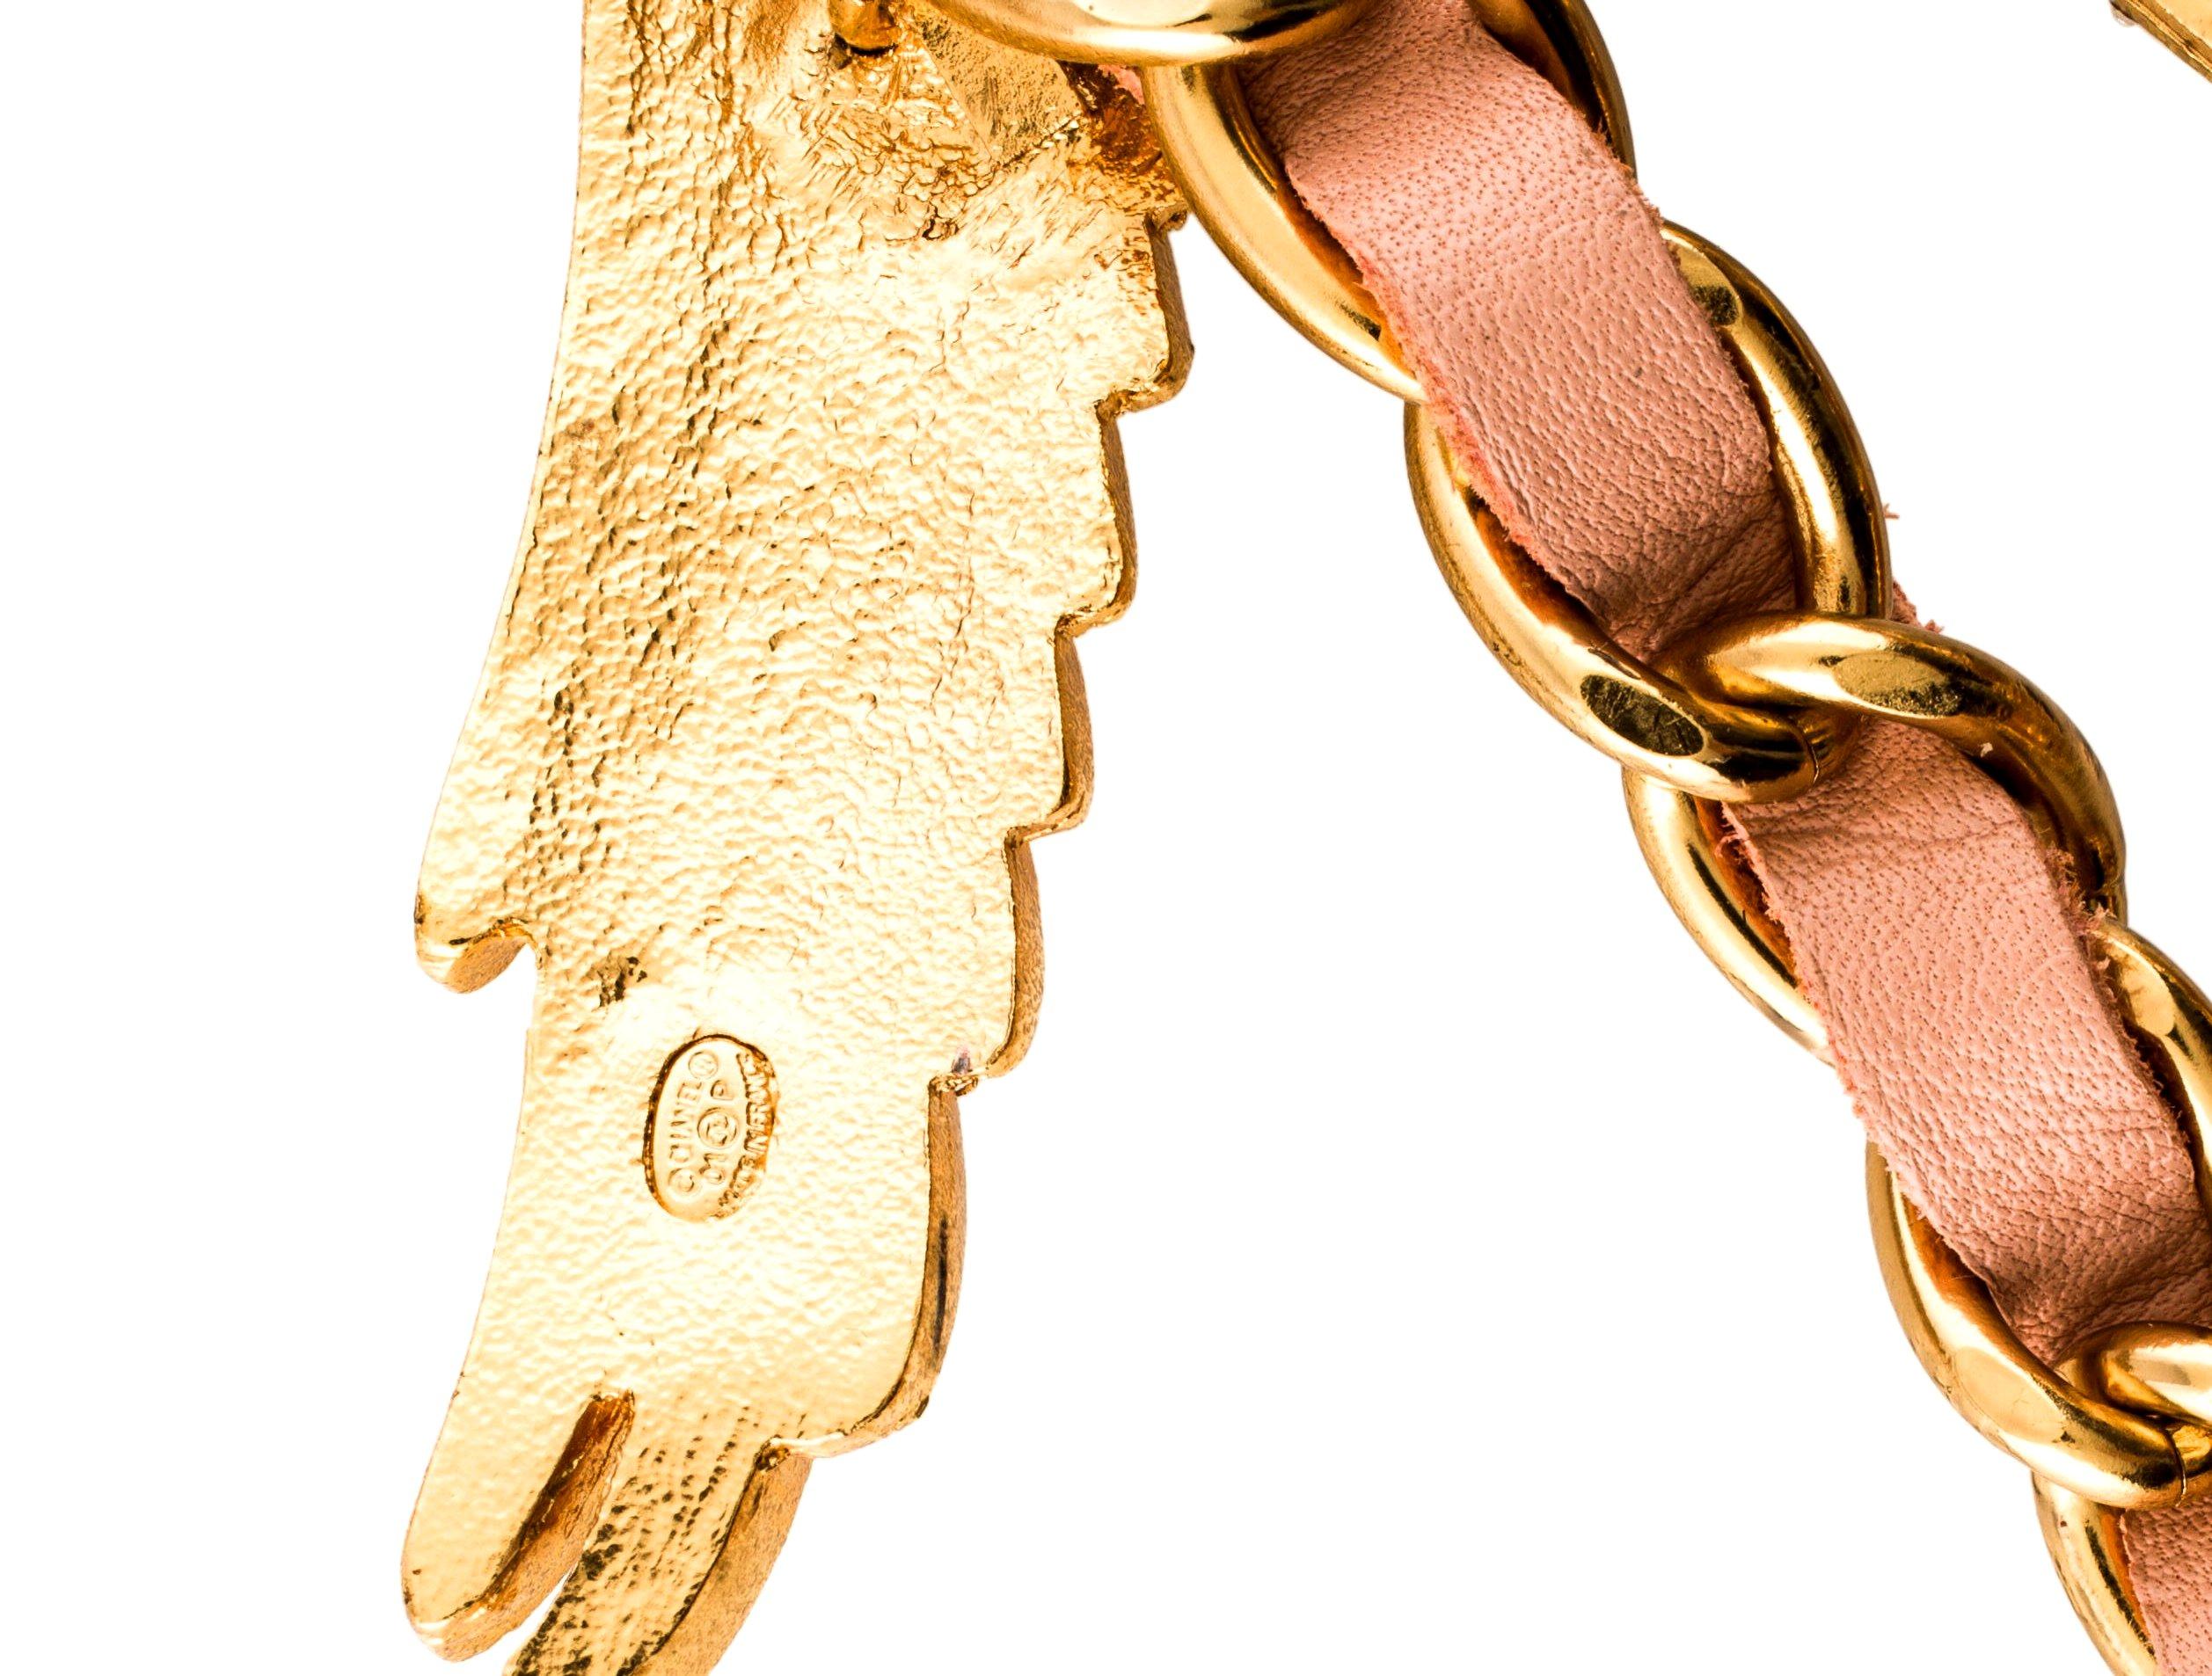 Seltener Fund!

Chanel Strass Adler CC Logo Leder & Kette
Kann als Gürtel oder sogar als Halskette getragen werden
Signatur-Lederkettenkombination
Adler mit Swarovski-Strasssteinen und CC-Logo verziert
Schließt mit Kette und Haken, CC-Logo